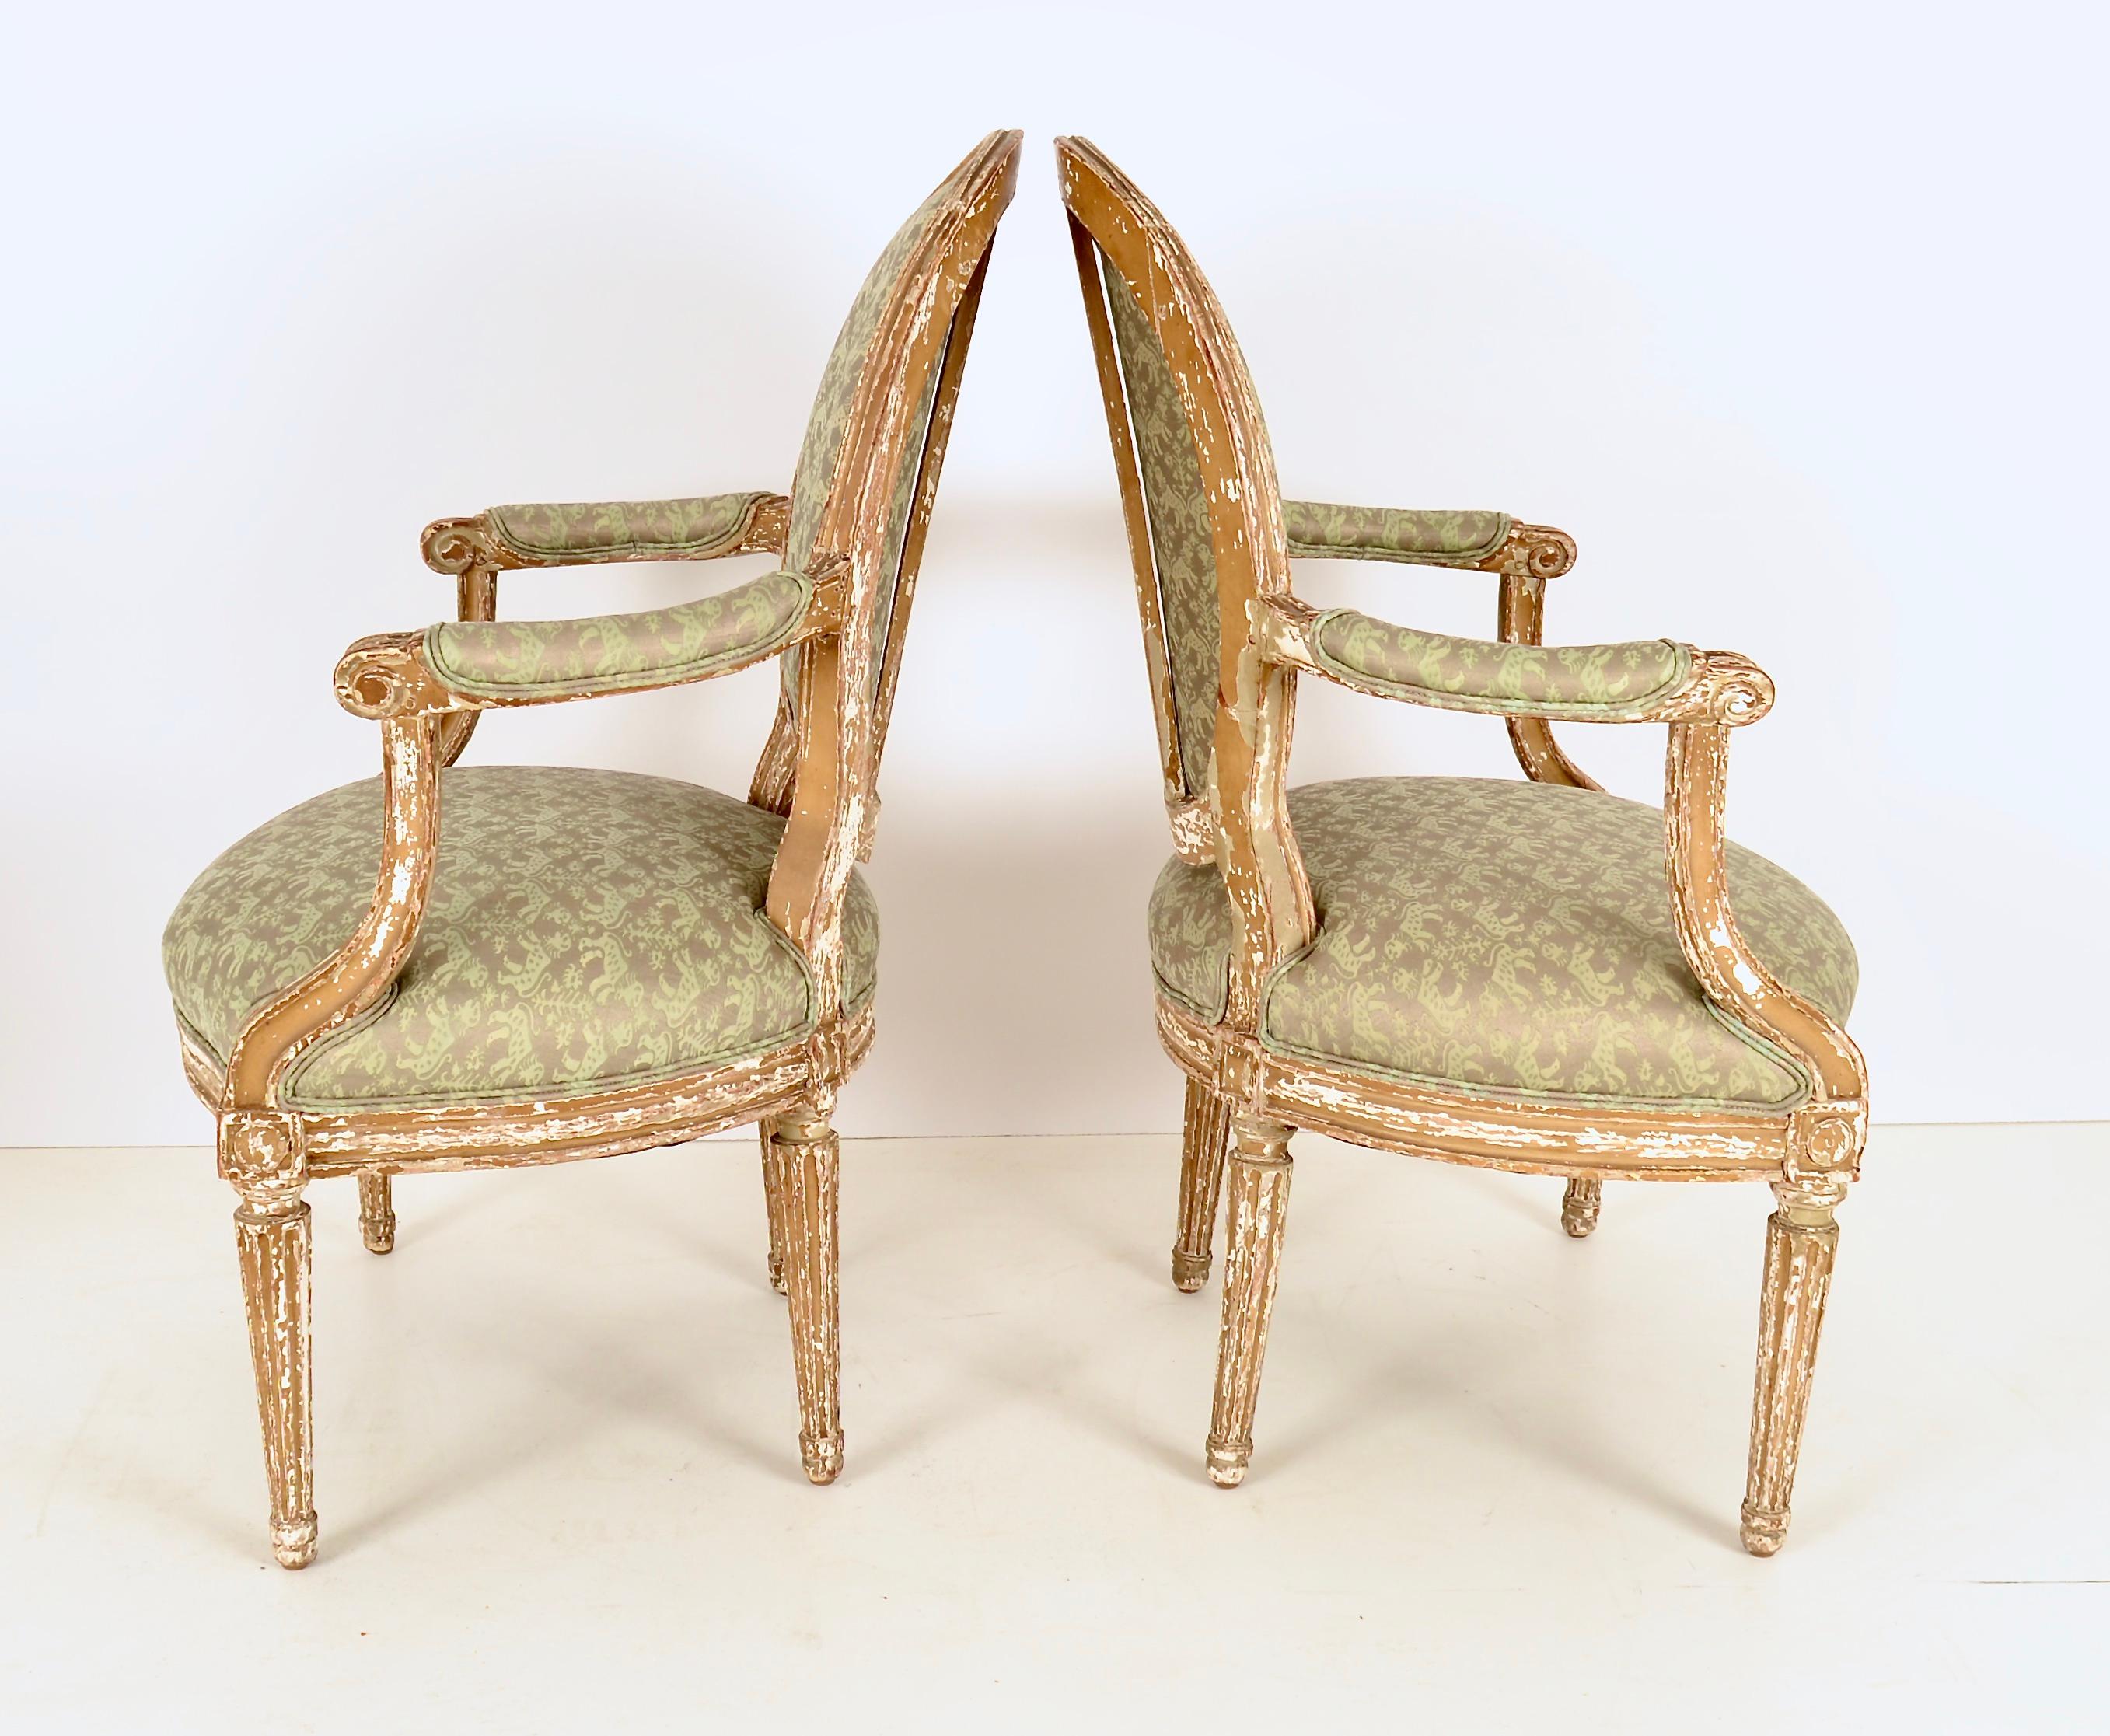 Charmante paire de chaises de fauteuil du 19ème siècle avec une belle finition de peinture vieillie. Aujourd'hui retapissé en tissu imprimé Fortuny dans des tons doux de vert et d'or. 